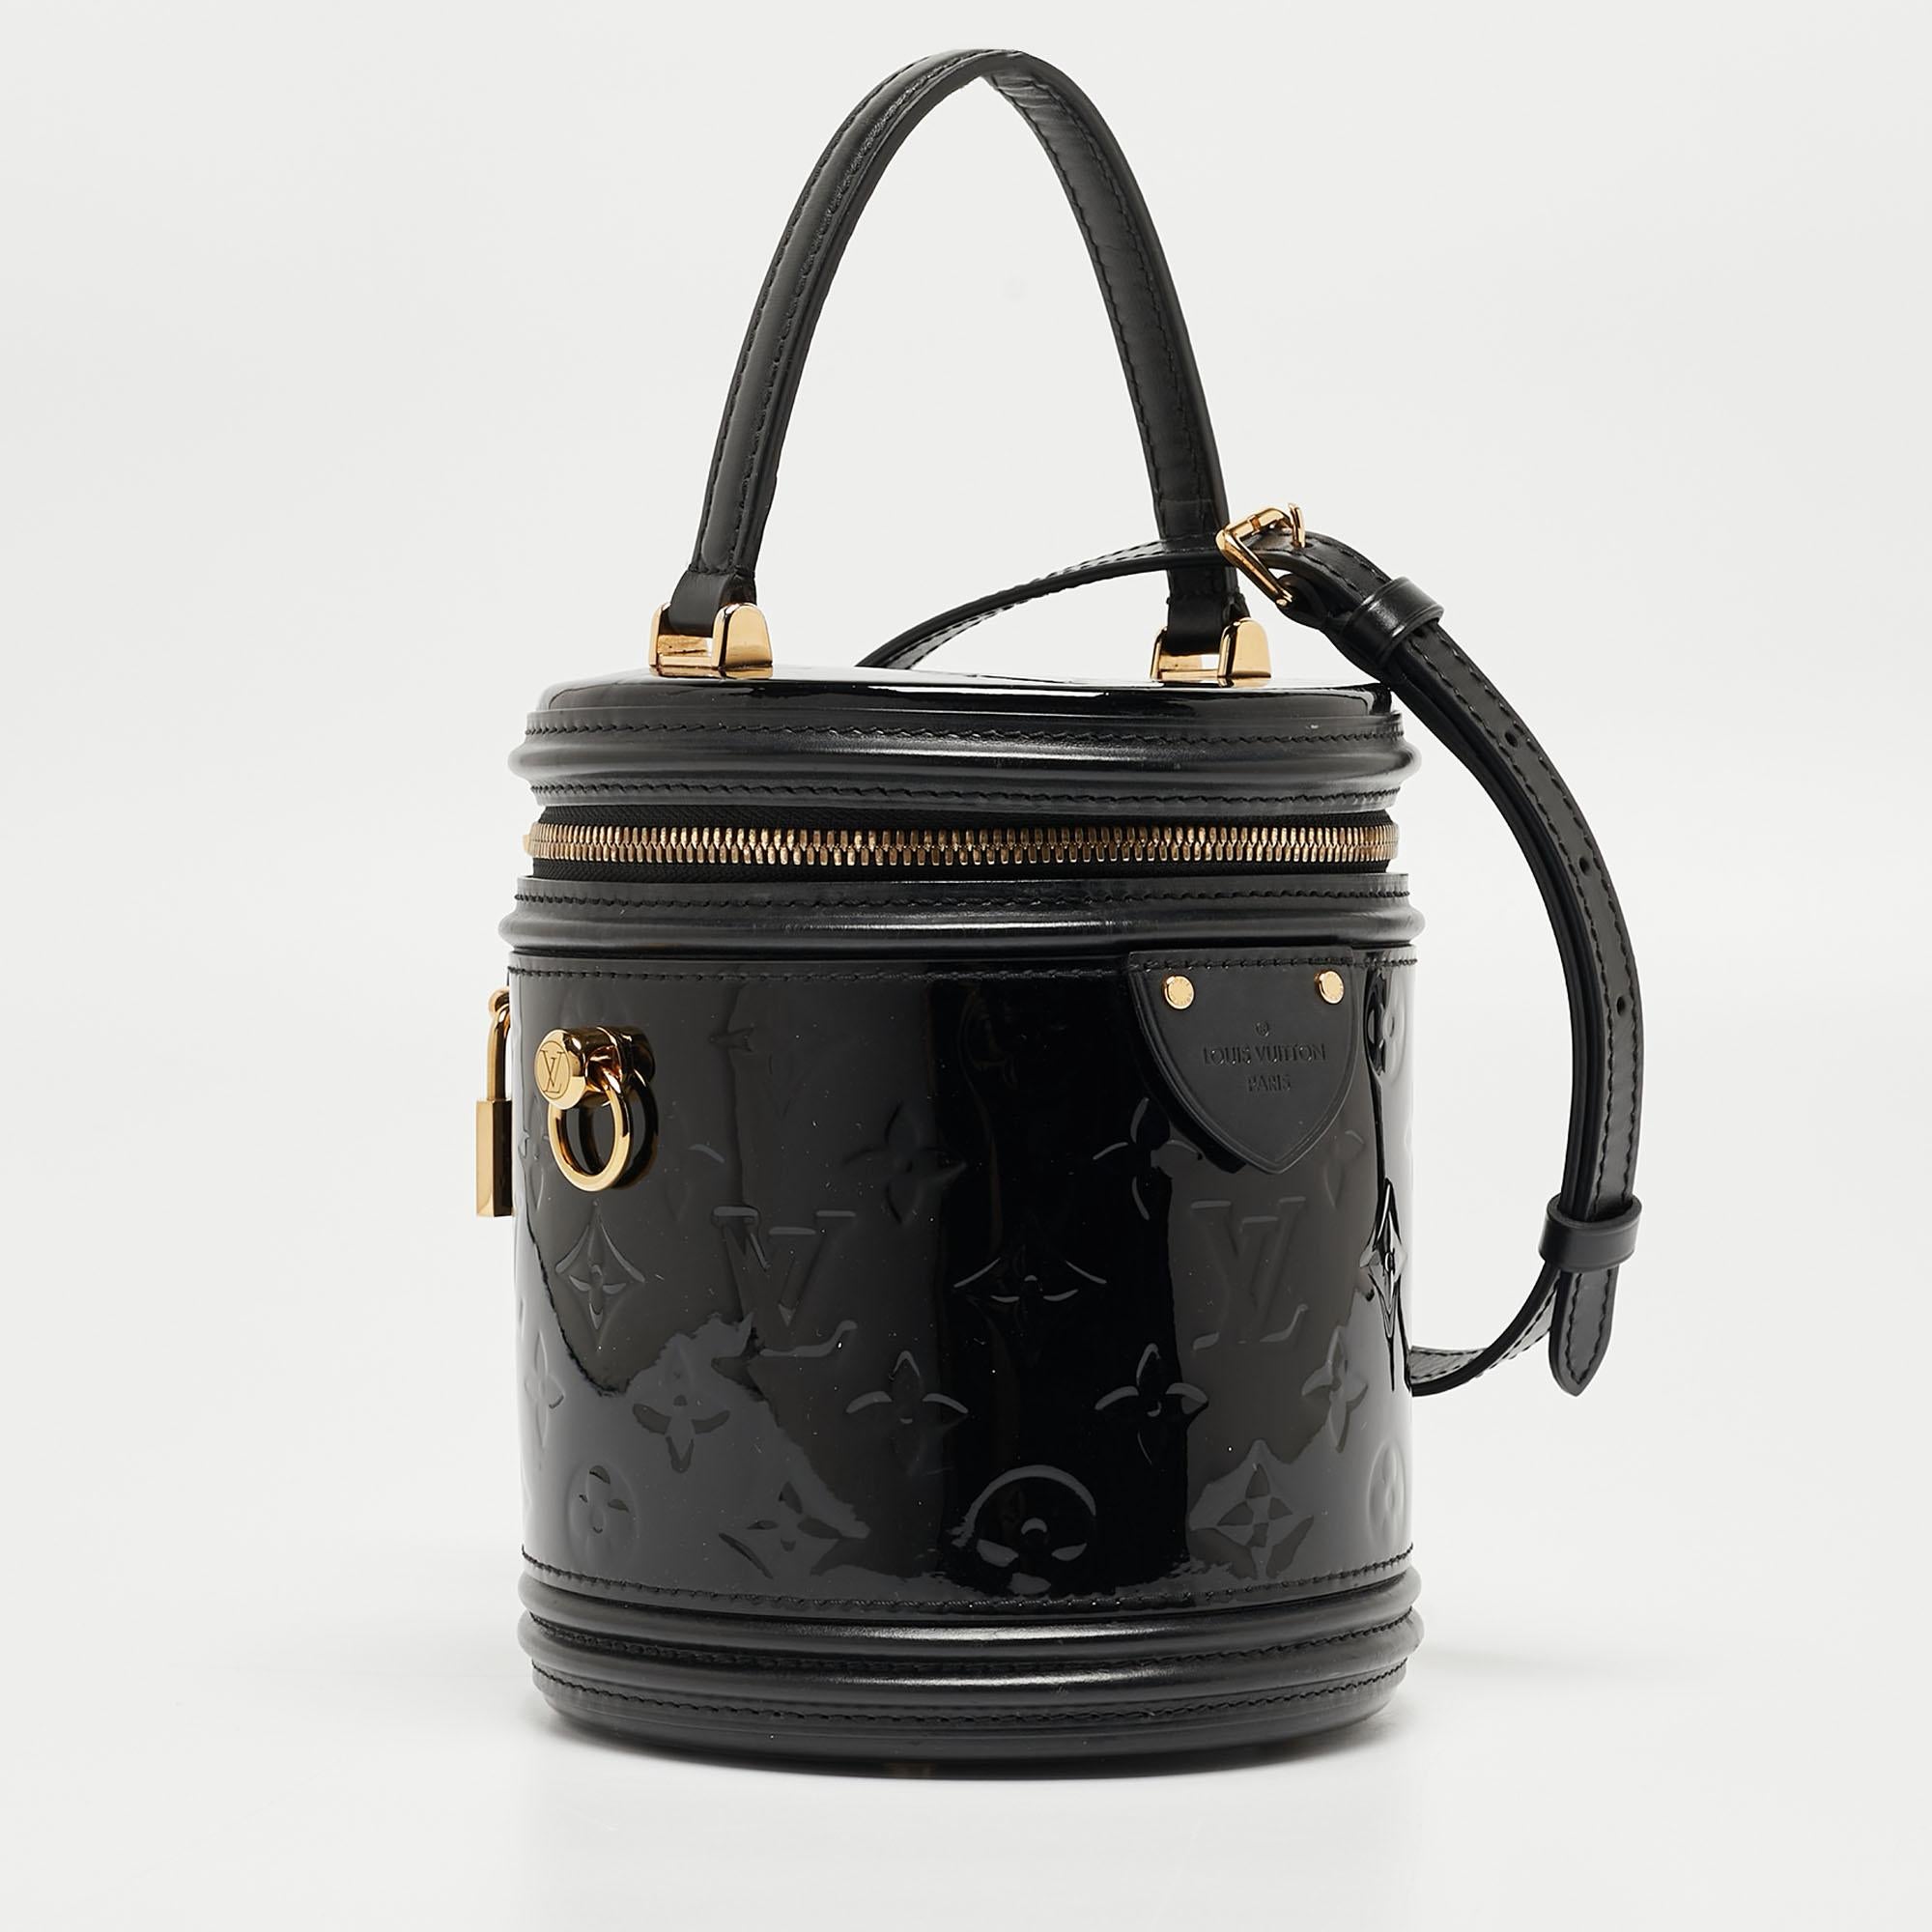 Louis Vuitton Black Monogram Vernis Cannes Bag 2